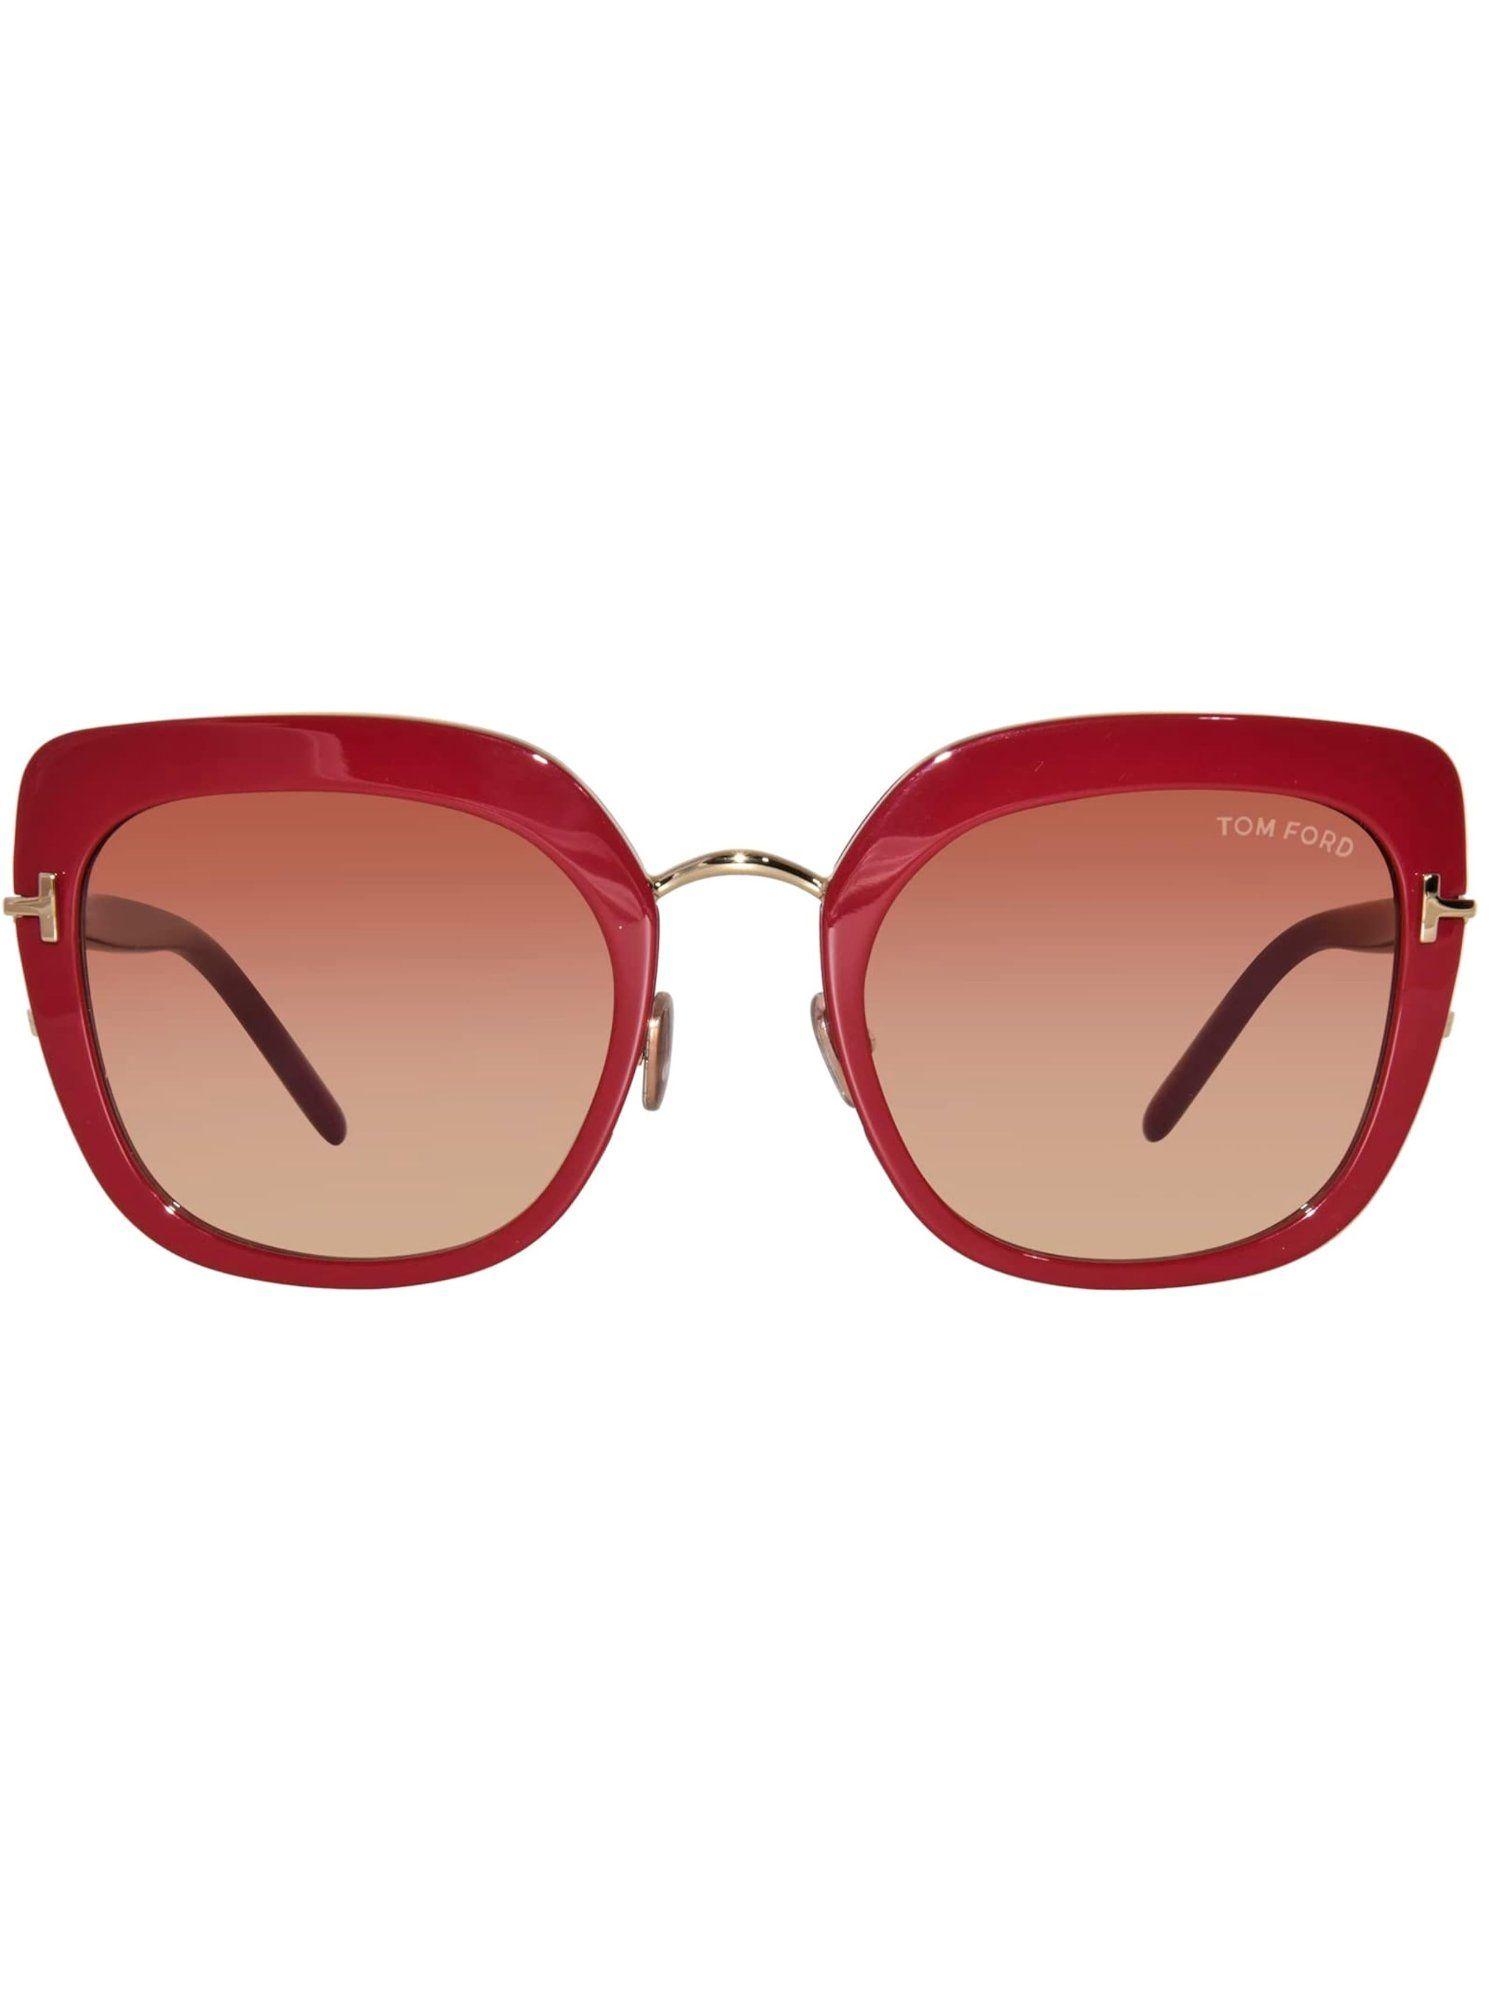 women square red lens sunglasses - ft0945 55 66t